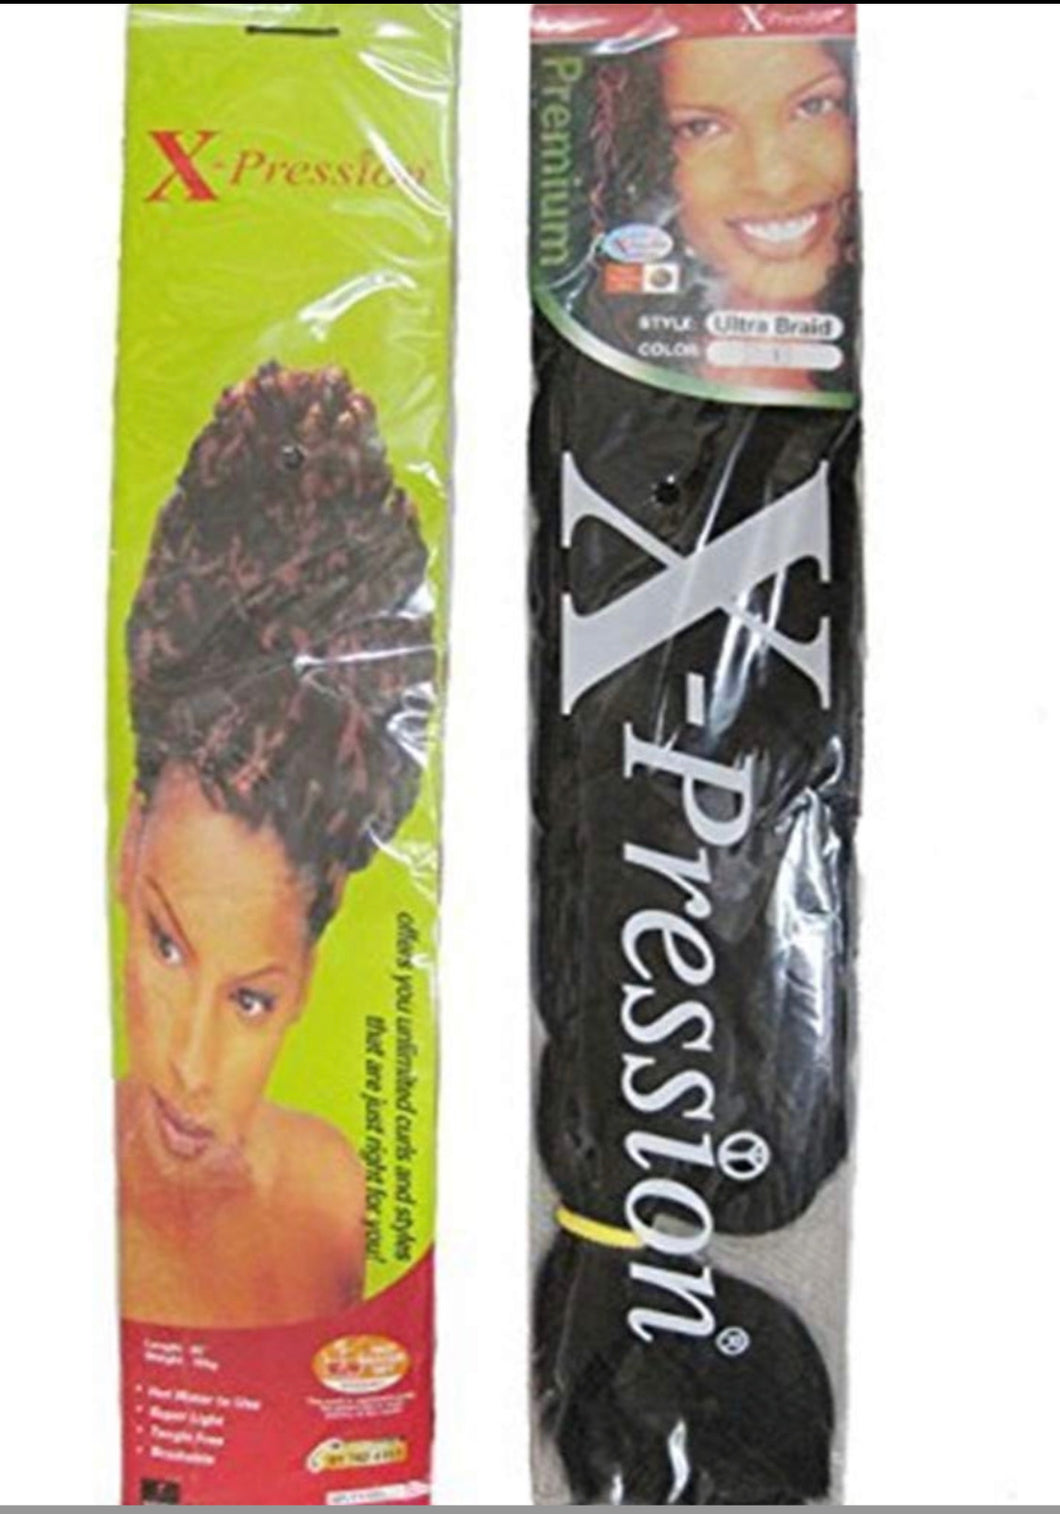 X-pression Hair